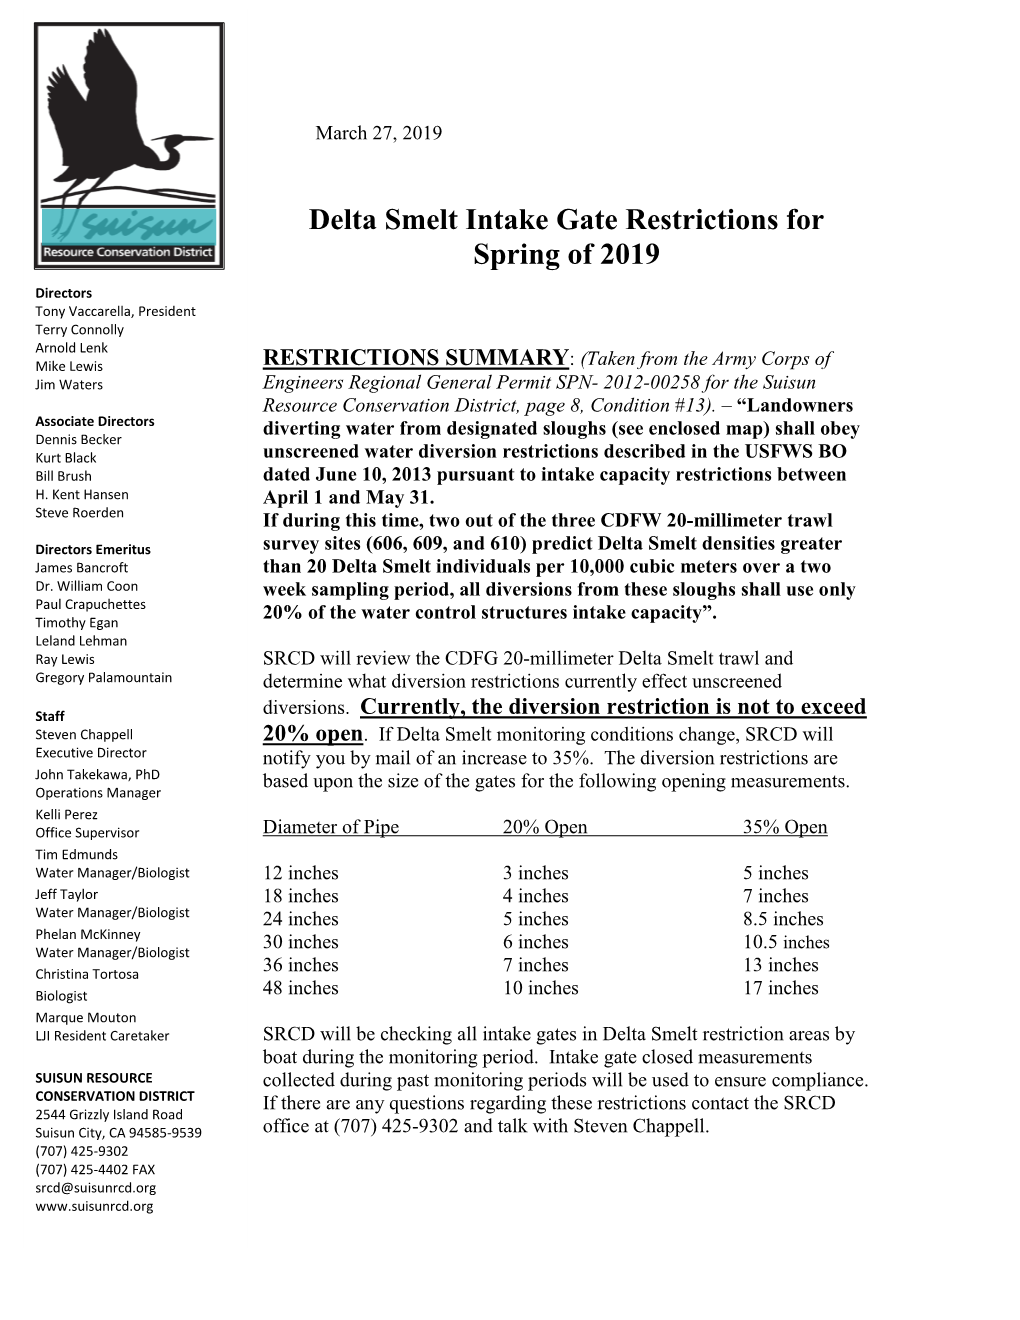 Delta Smelt Intake Gate Restrictions for Spring of 2019